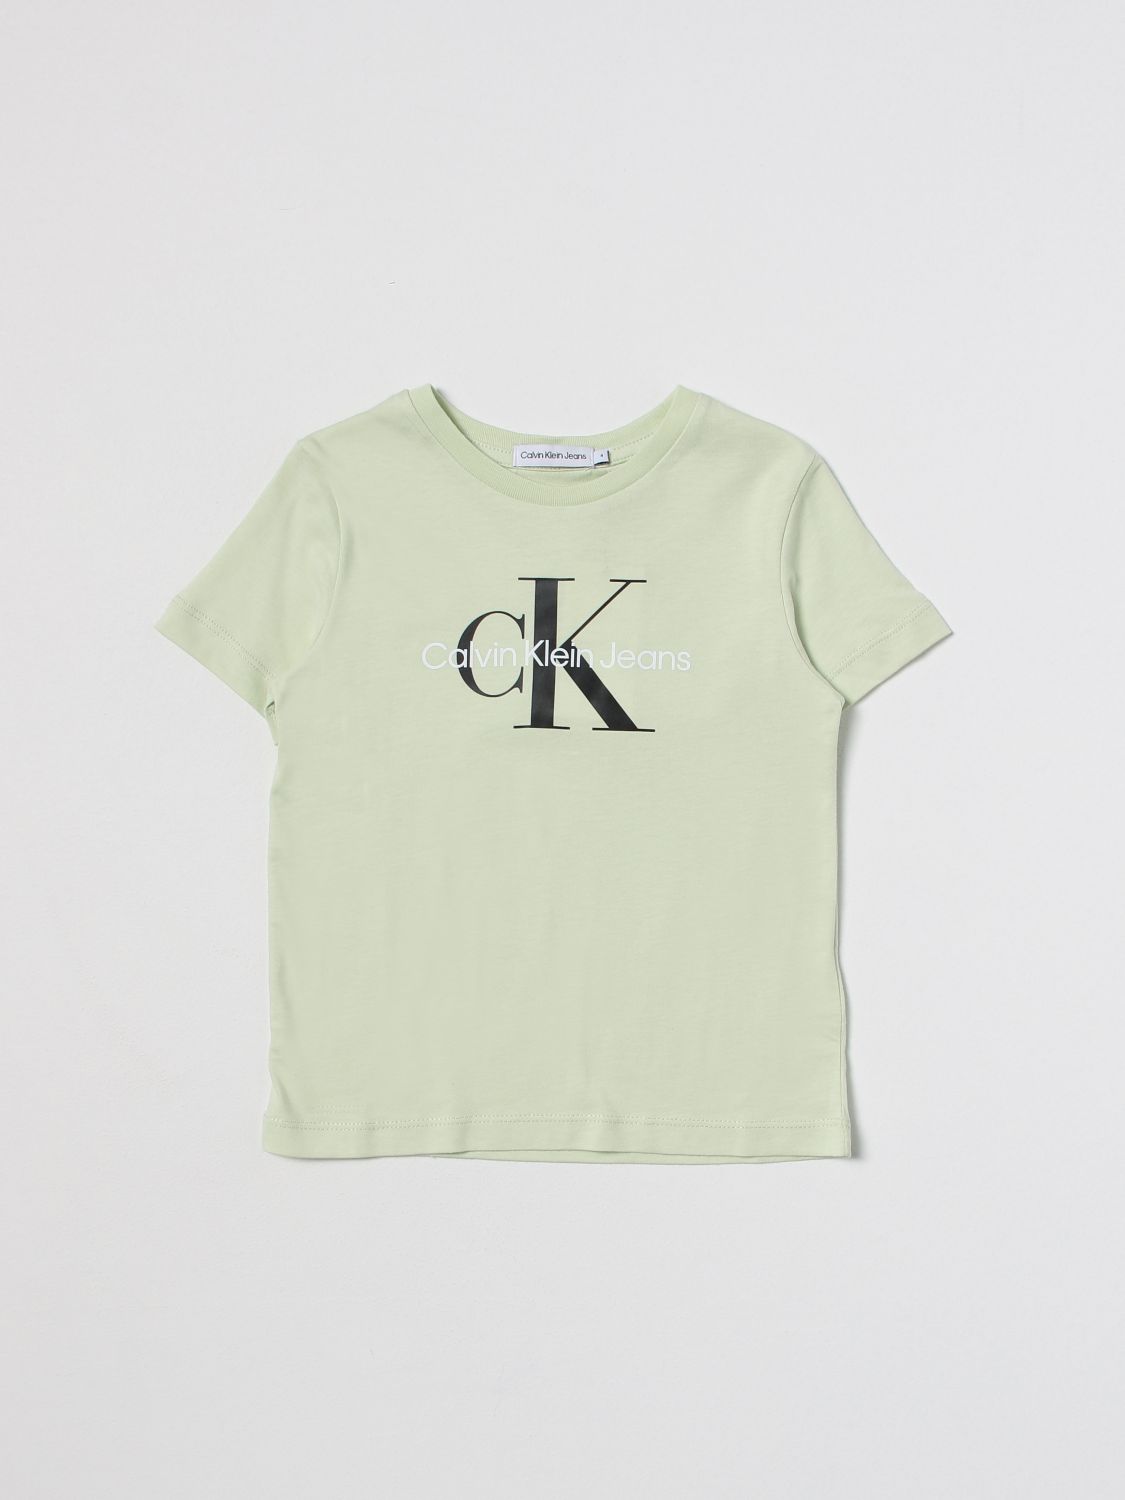 cijfer hypothese Convergeren CALVIN KLEIN JEANS: t-shirt for girls - Green | Calvin Klein Jeans t-shirt  IU0IU00267 online on GIGLIO.COM